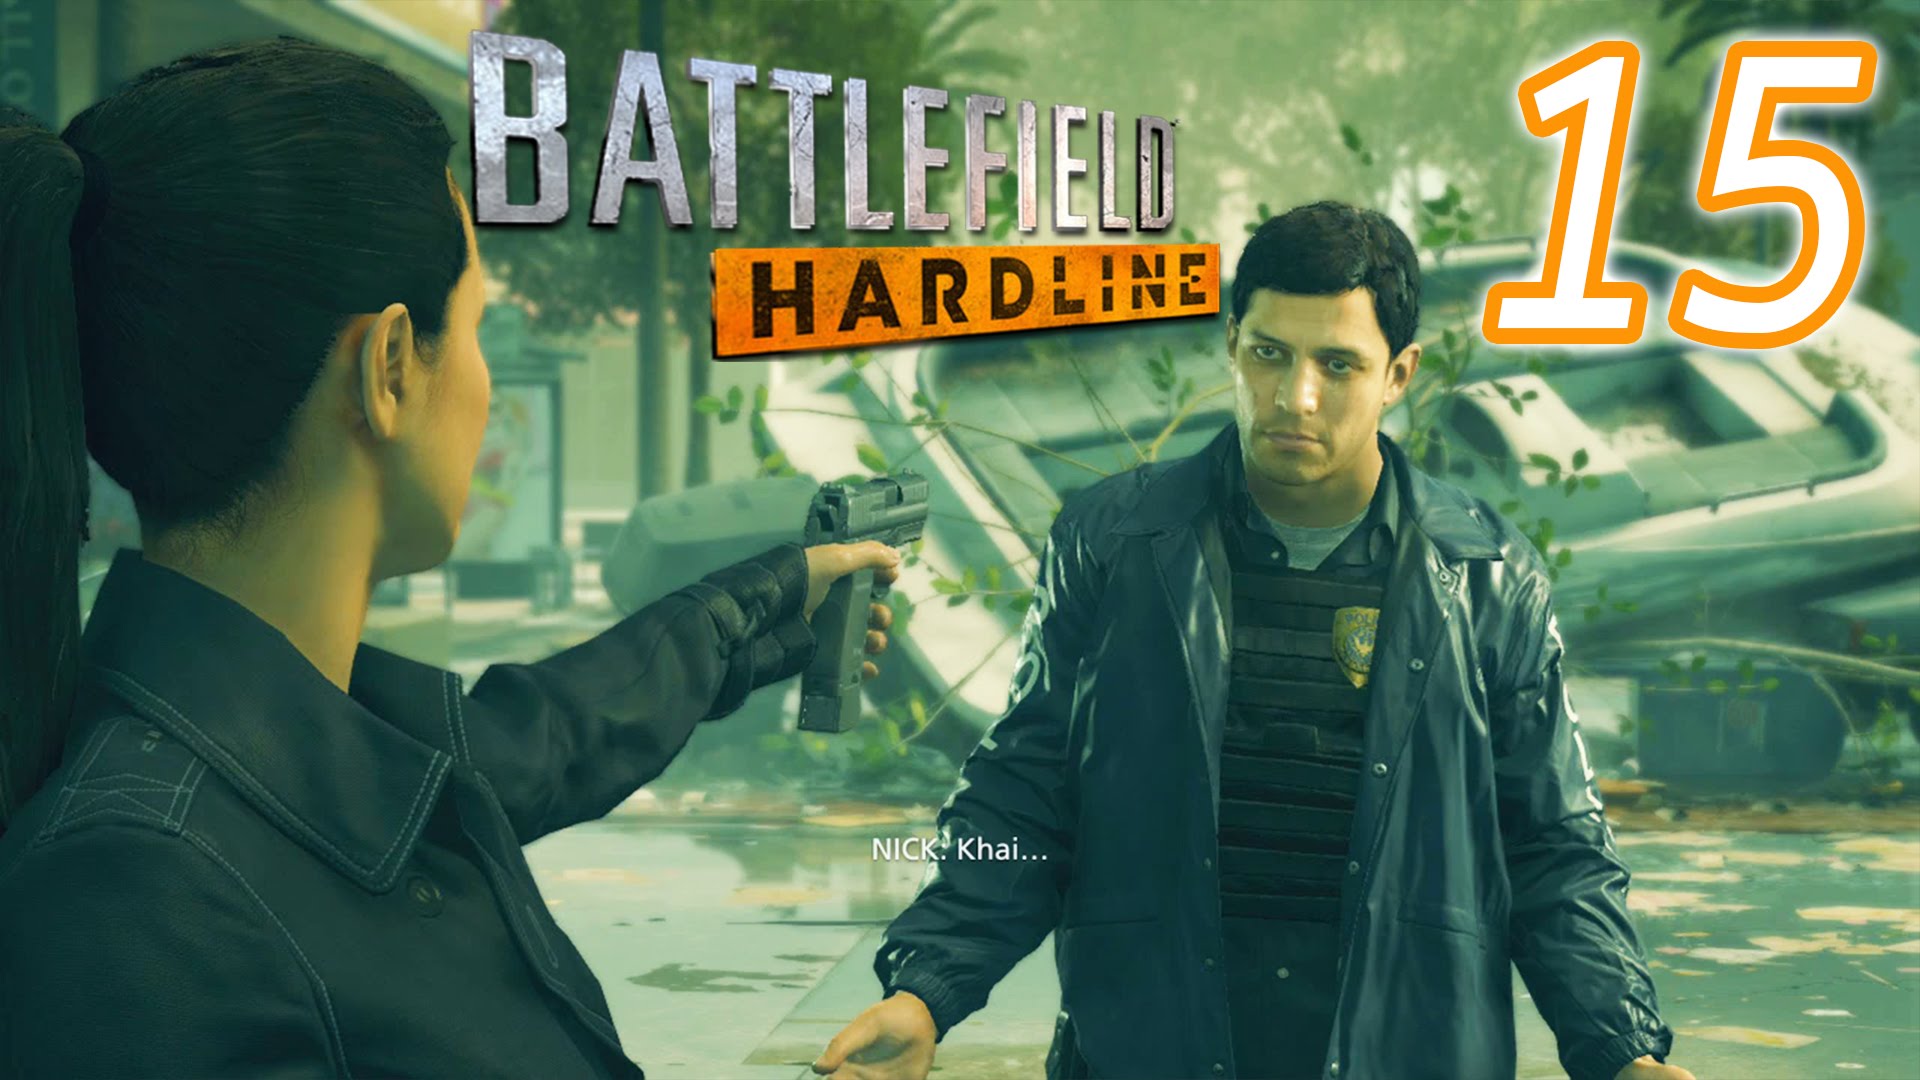 بتلفیلد هاردلاین مرحله 15 - Battlefield Hardline-PC